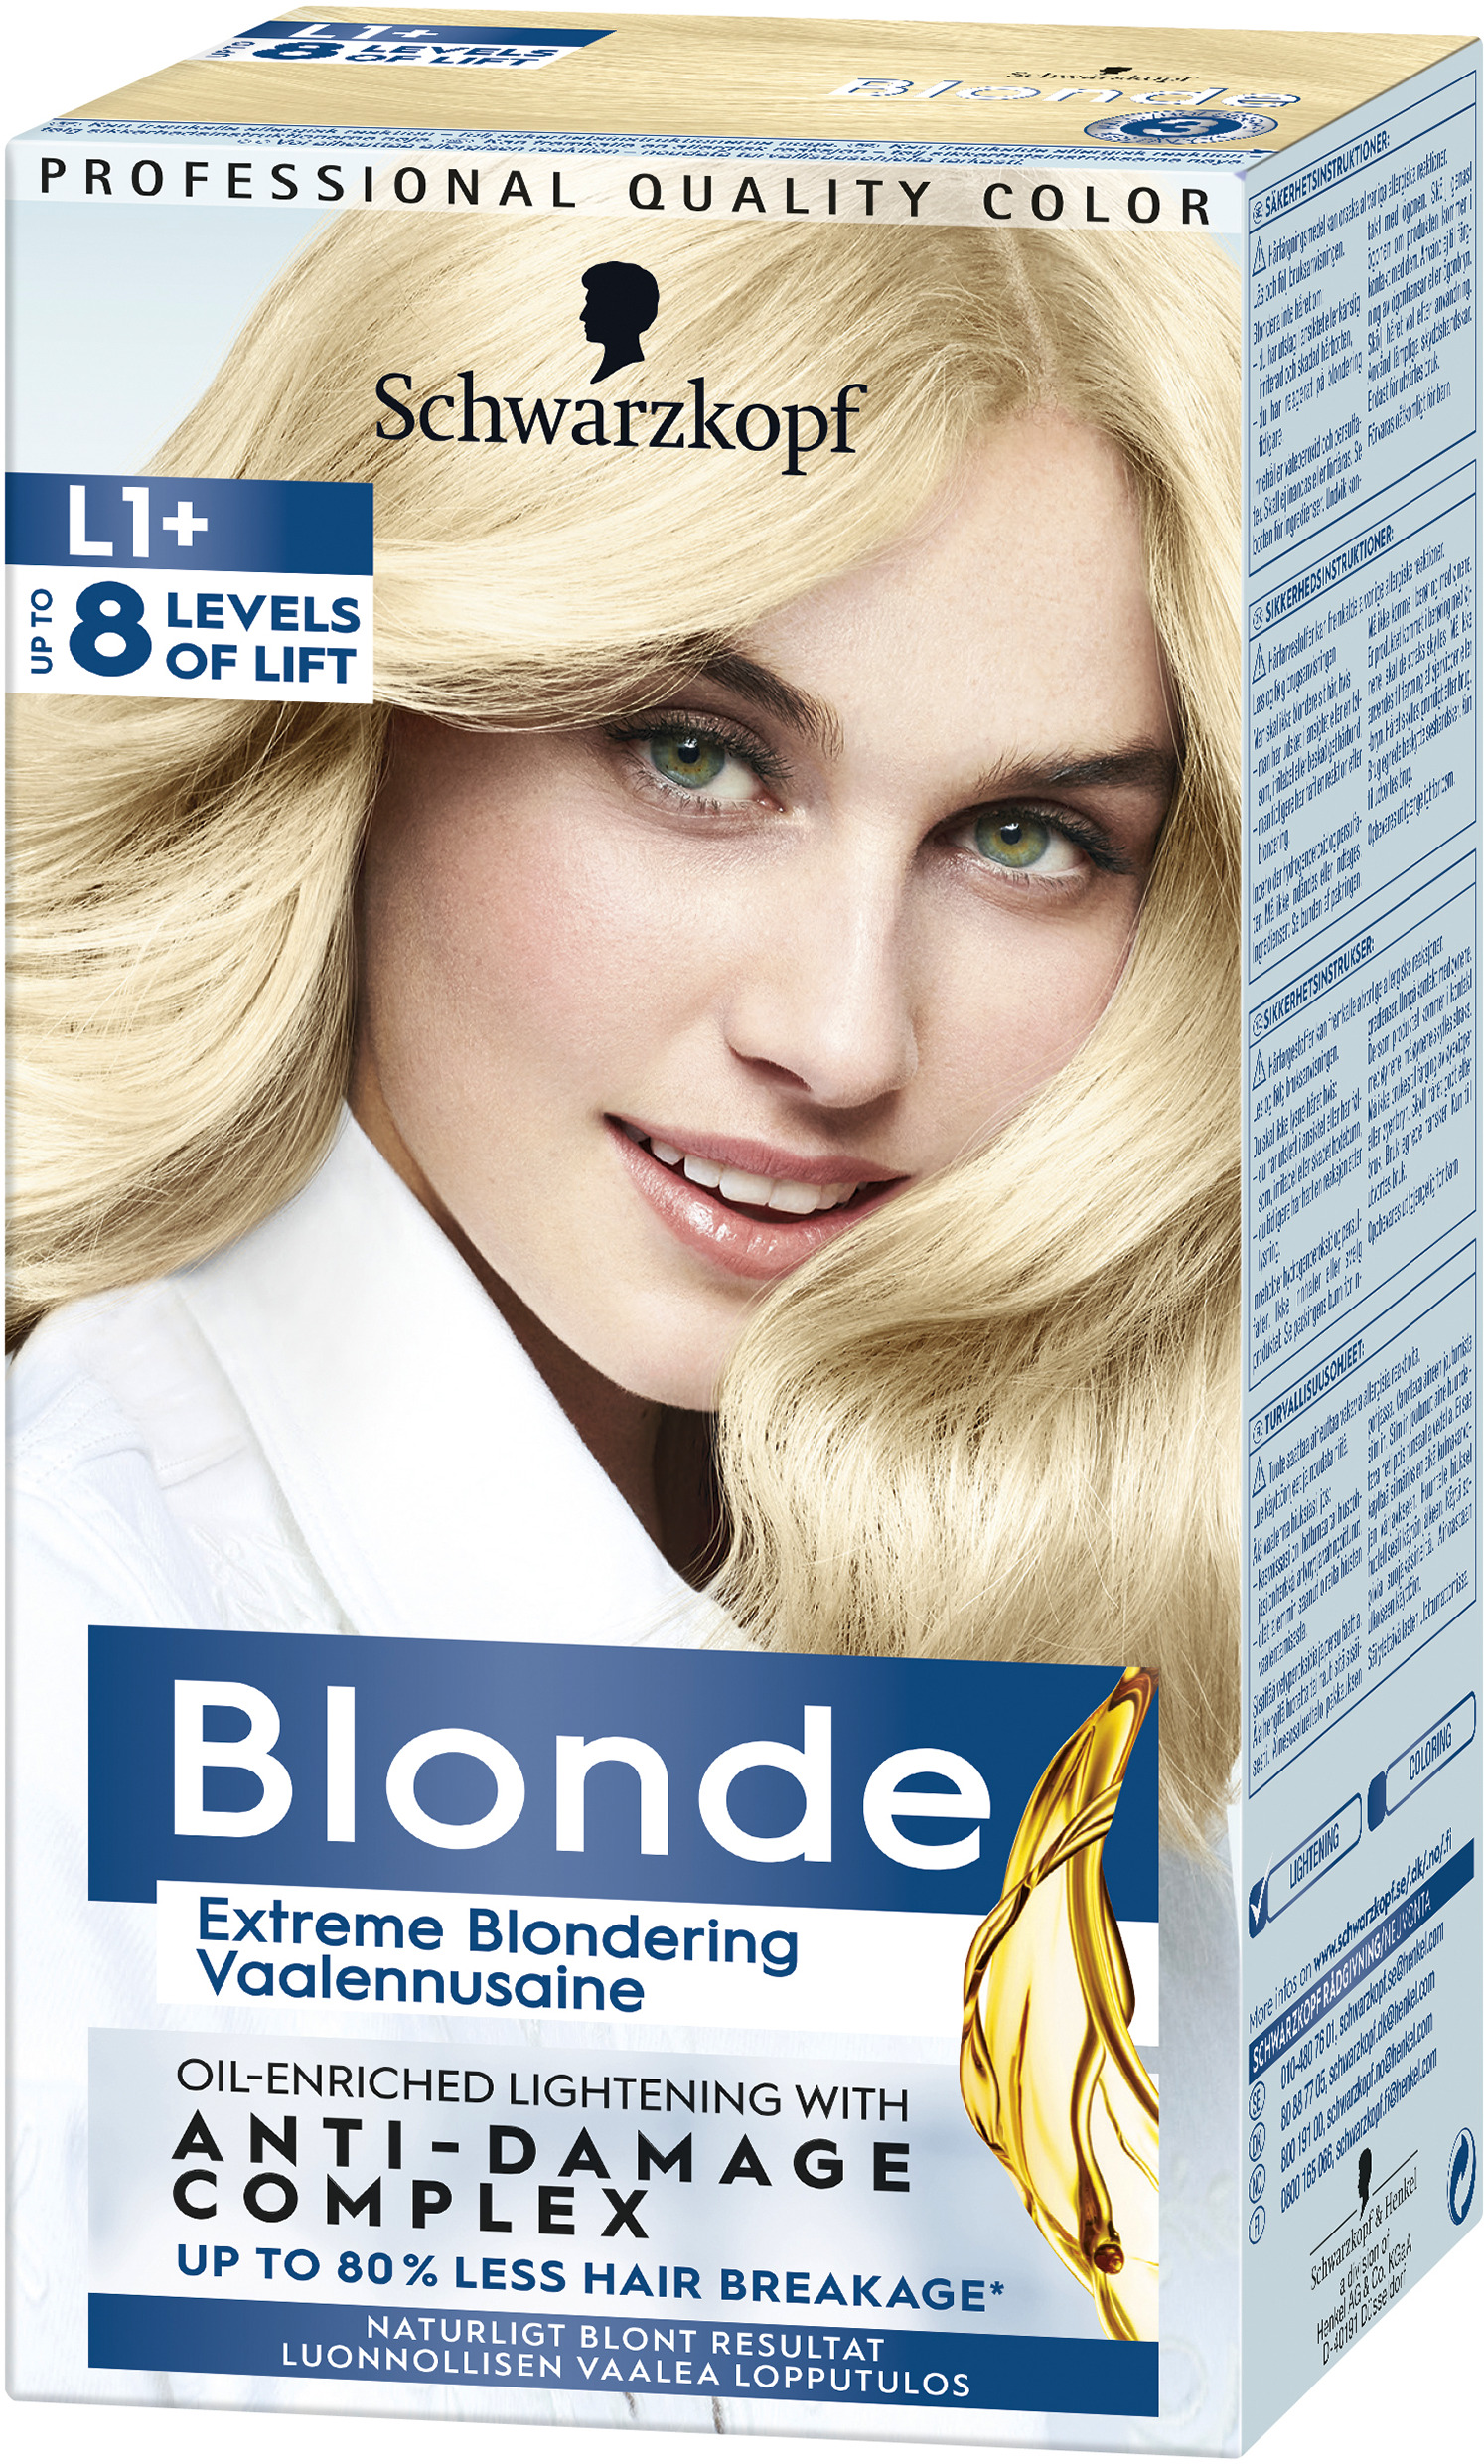 Schwarzkopf Blonde L1+ Extreme Blondering 1 st